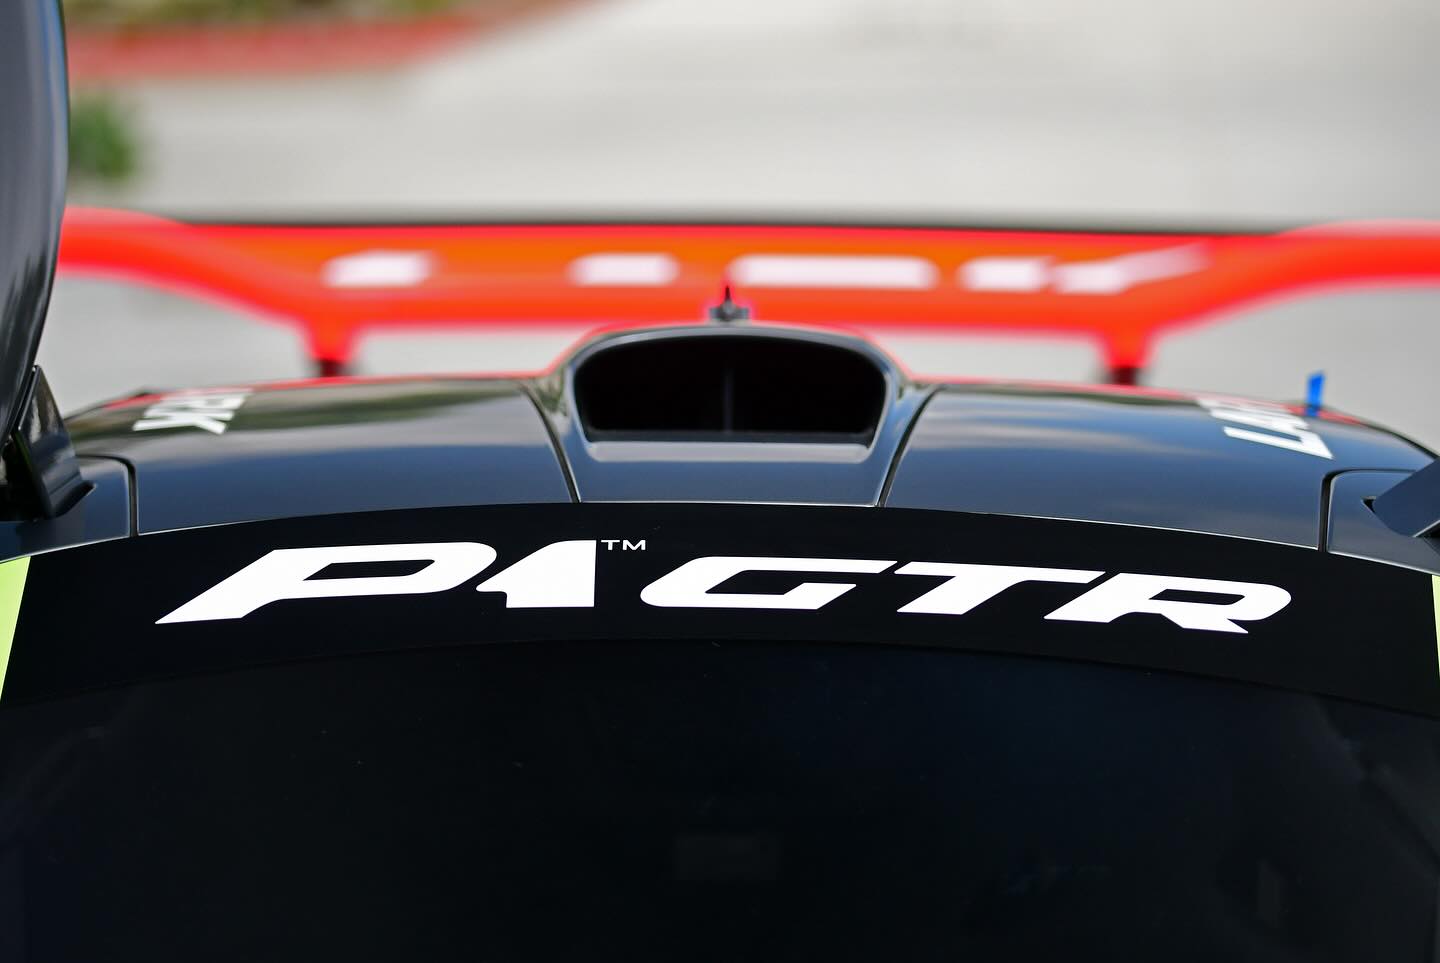 迈凯伦P1 GTR Lark